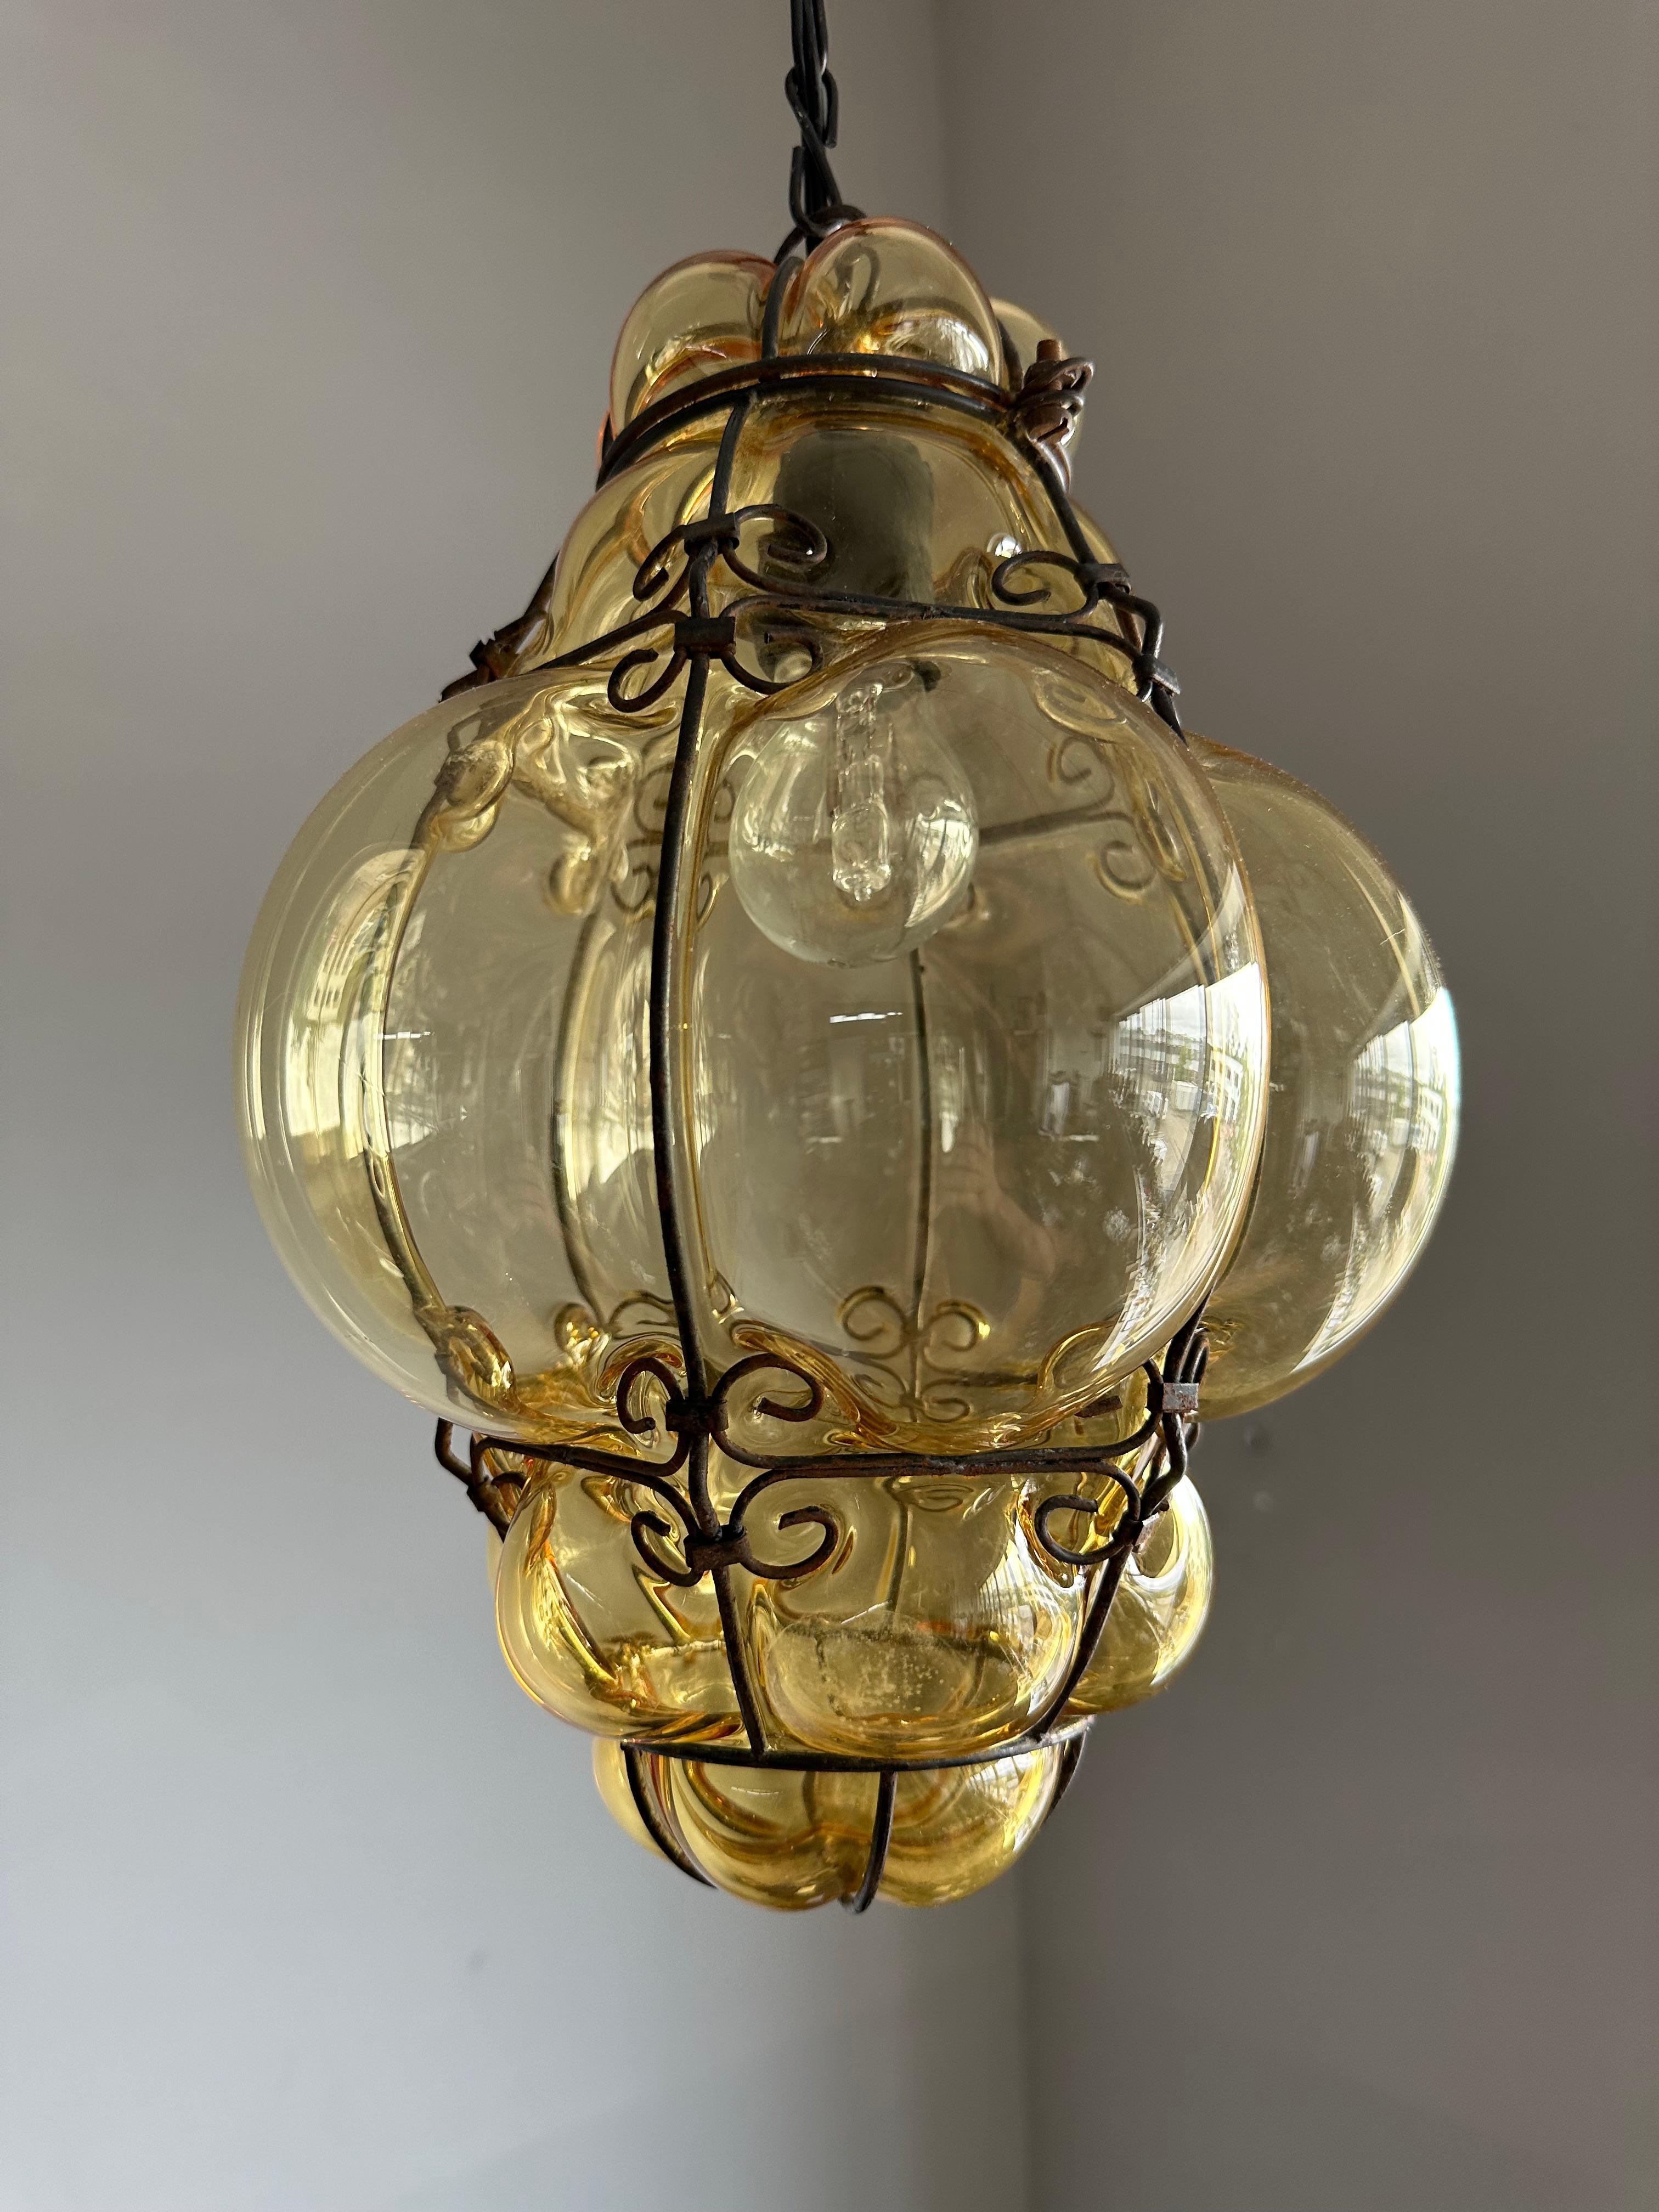 Magnifique luminaire vénitien pour votre hall, entrée, chambre à coucher, cabine, etc.

Ce pendentif en verre ambré fumé de bonne taille, provenant de l'Italie du milieu du siècle dernier, est une autre de nos trouvailles récentes. Fabriquée à la